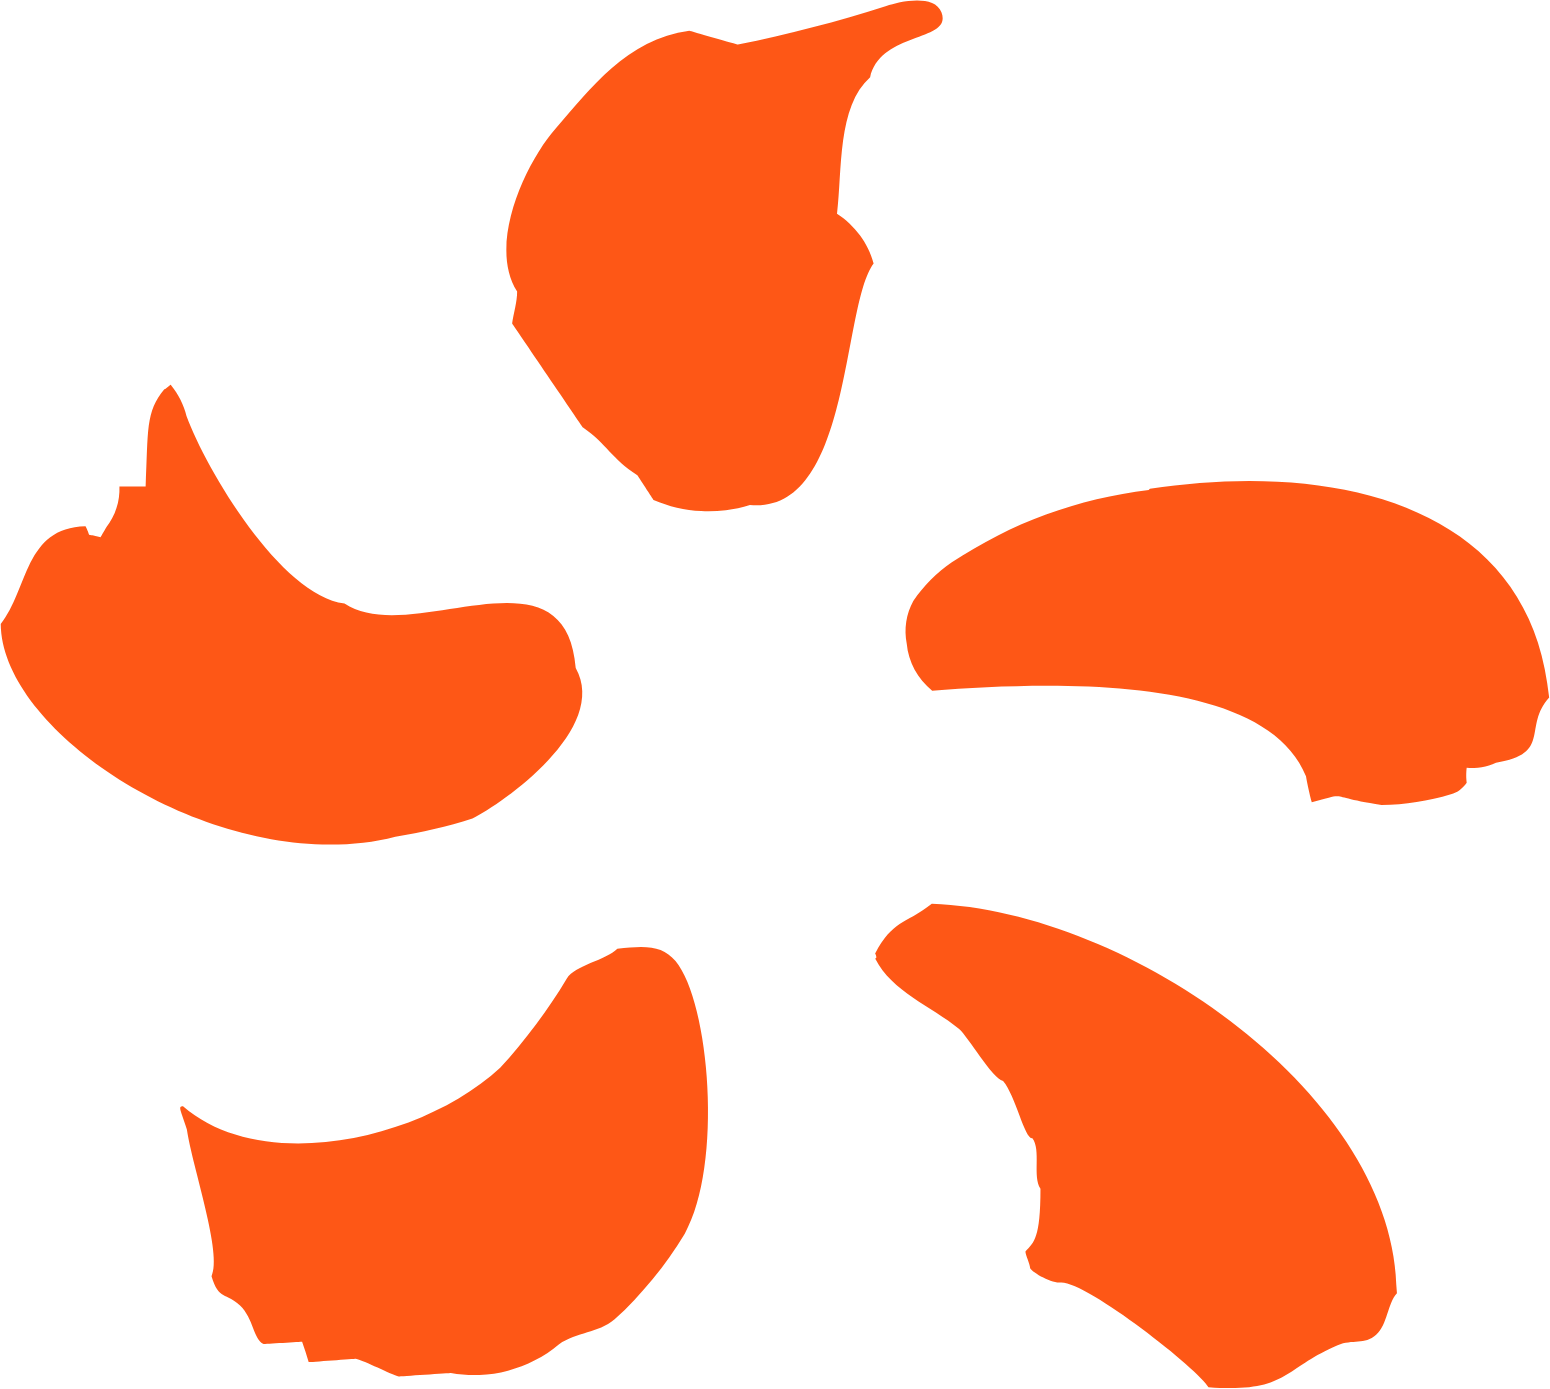 EDF (Electricité de France) logo (transparent PNG)